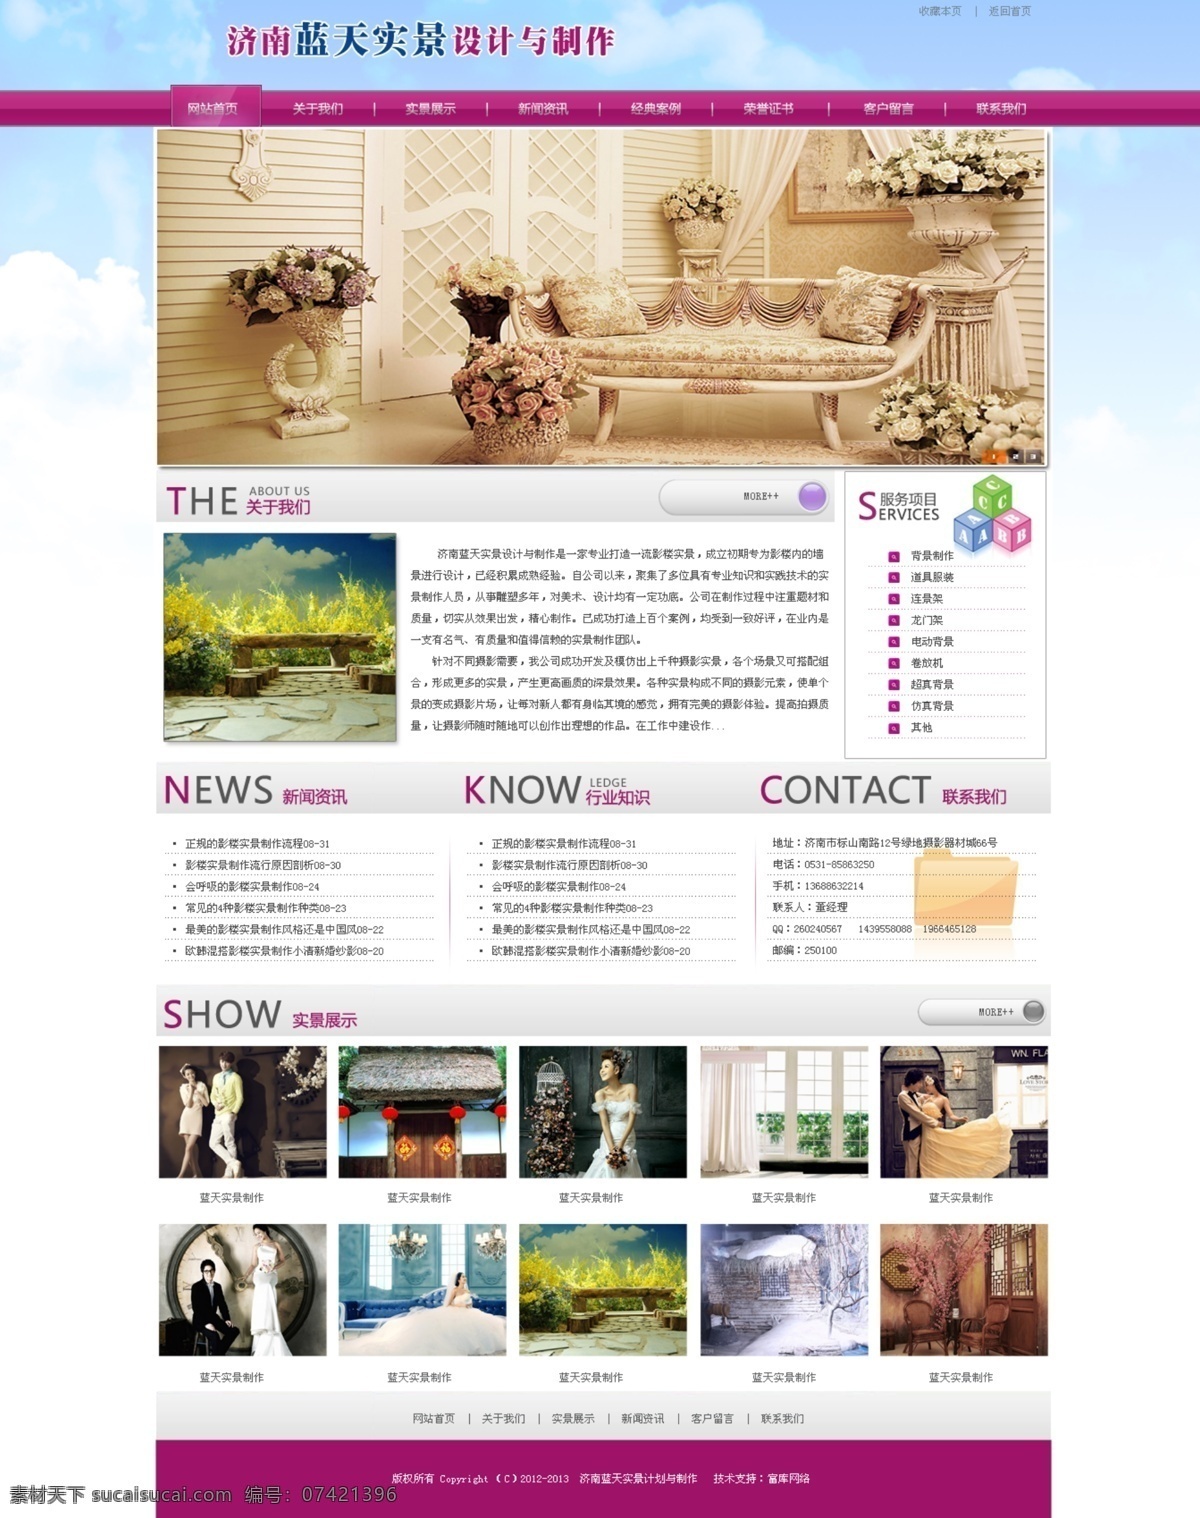 banner 设计图 网页模板 网站 效果图 影楼 源文件 中文模板 类 模板下载 网页素材